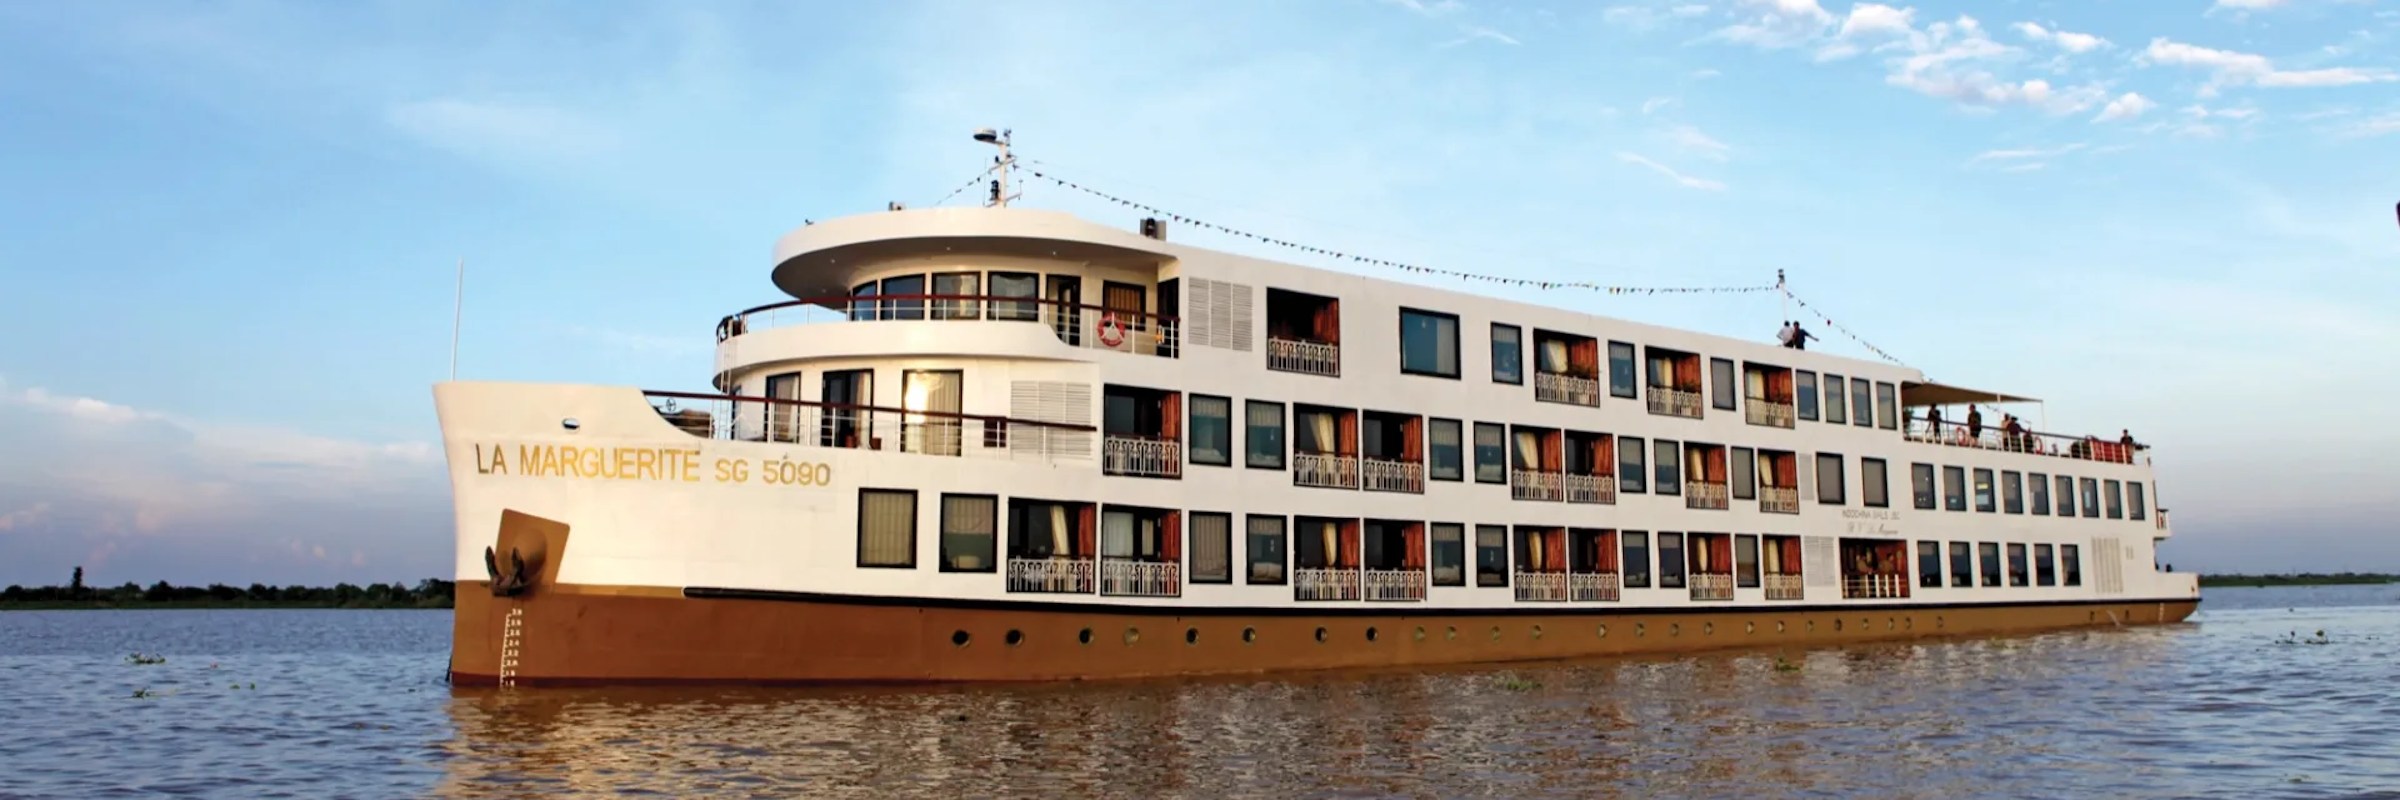 Das luxuriöse Flusskreuzfahrtschiff R/V La Marguerite wurde im Jahr 2009 in den Werften von Saigon gebaut, und 2018 komplett überholt.